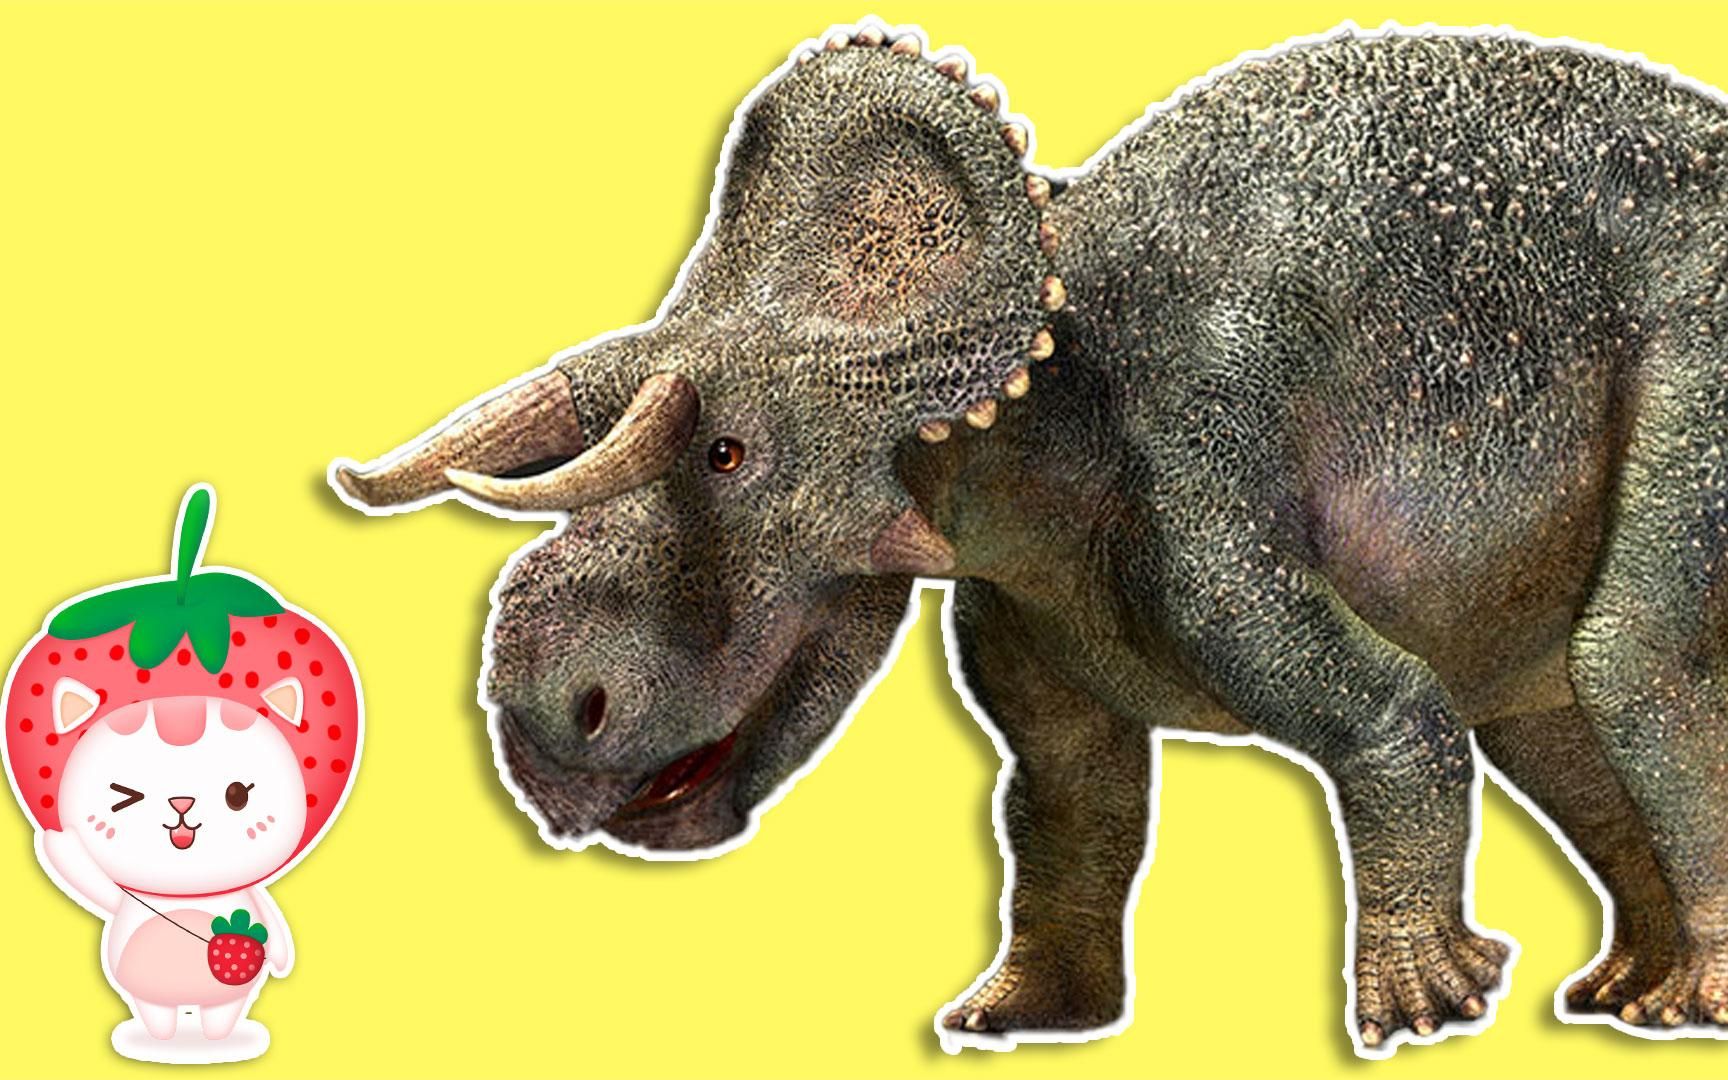 恐龙世界侏罗纪,恐龙百科儿童科普,认识大鼻角龙